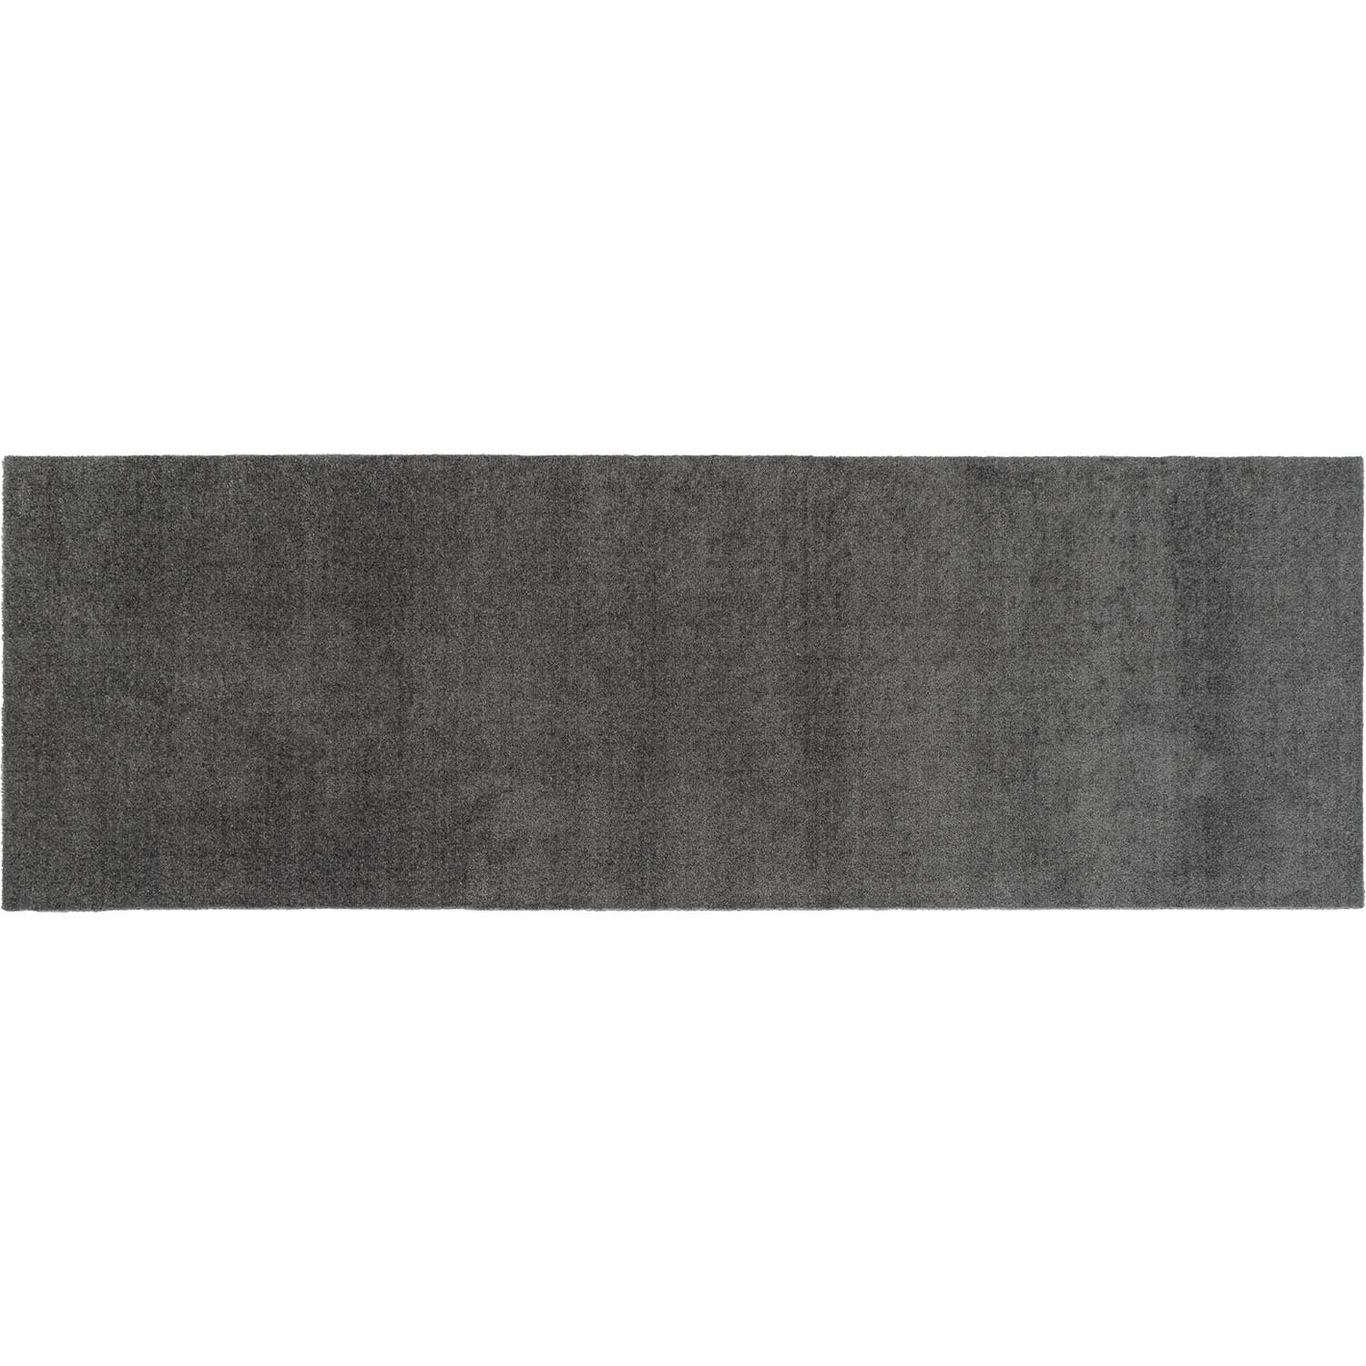 Unicolor Door Mat Steel Grey, 90x200 cm